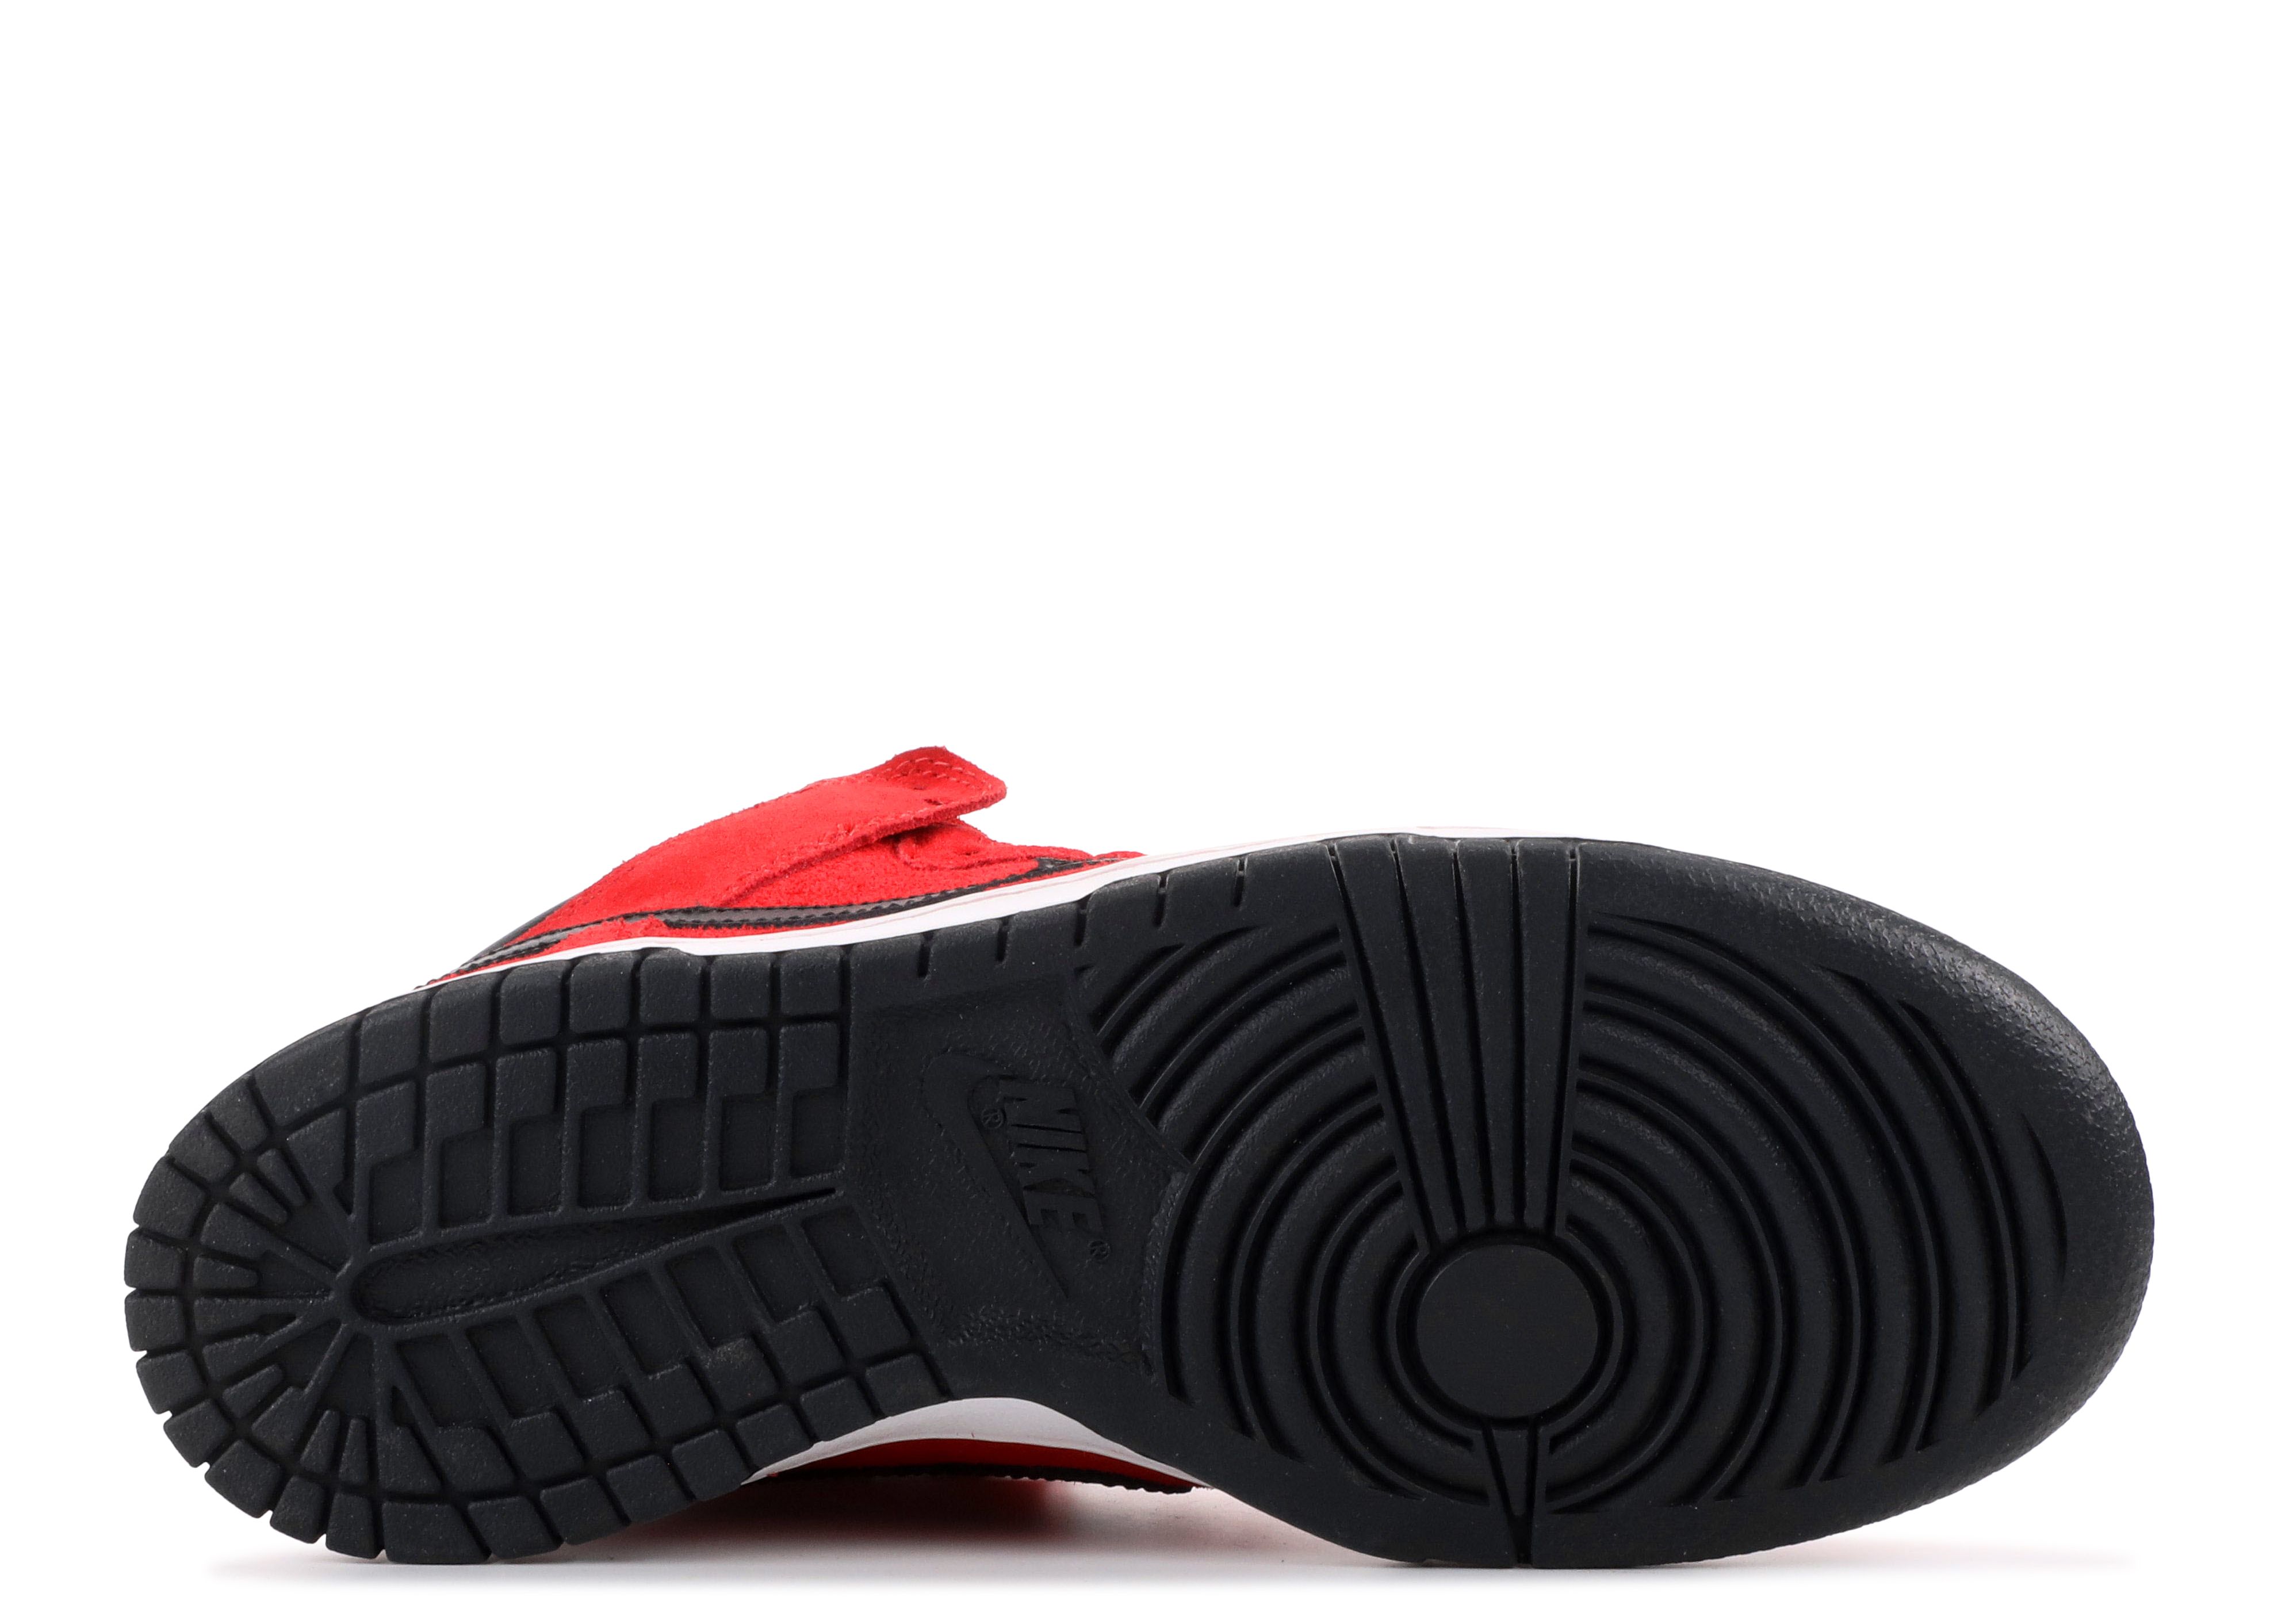 Dunk Mid Pro Sb - Nike - 314383 600 - sport red/black | Flight Club